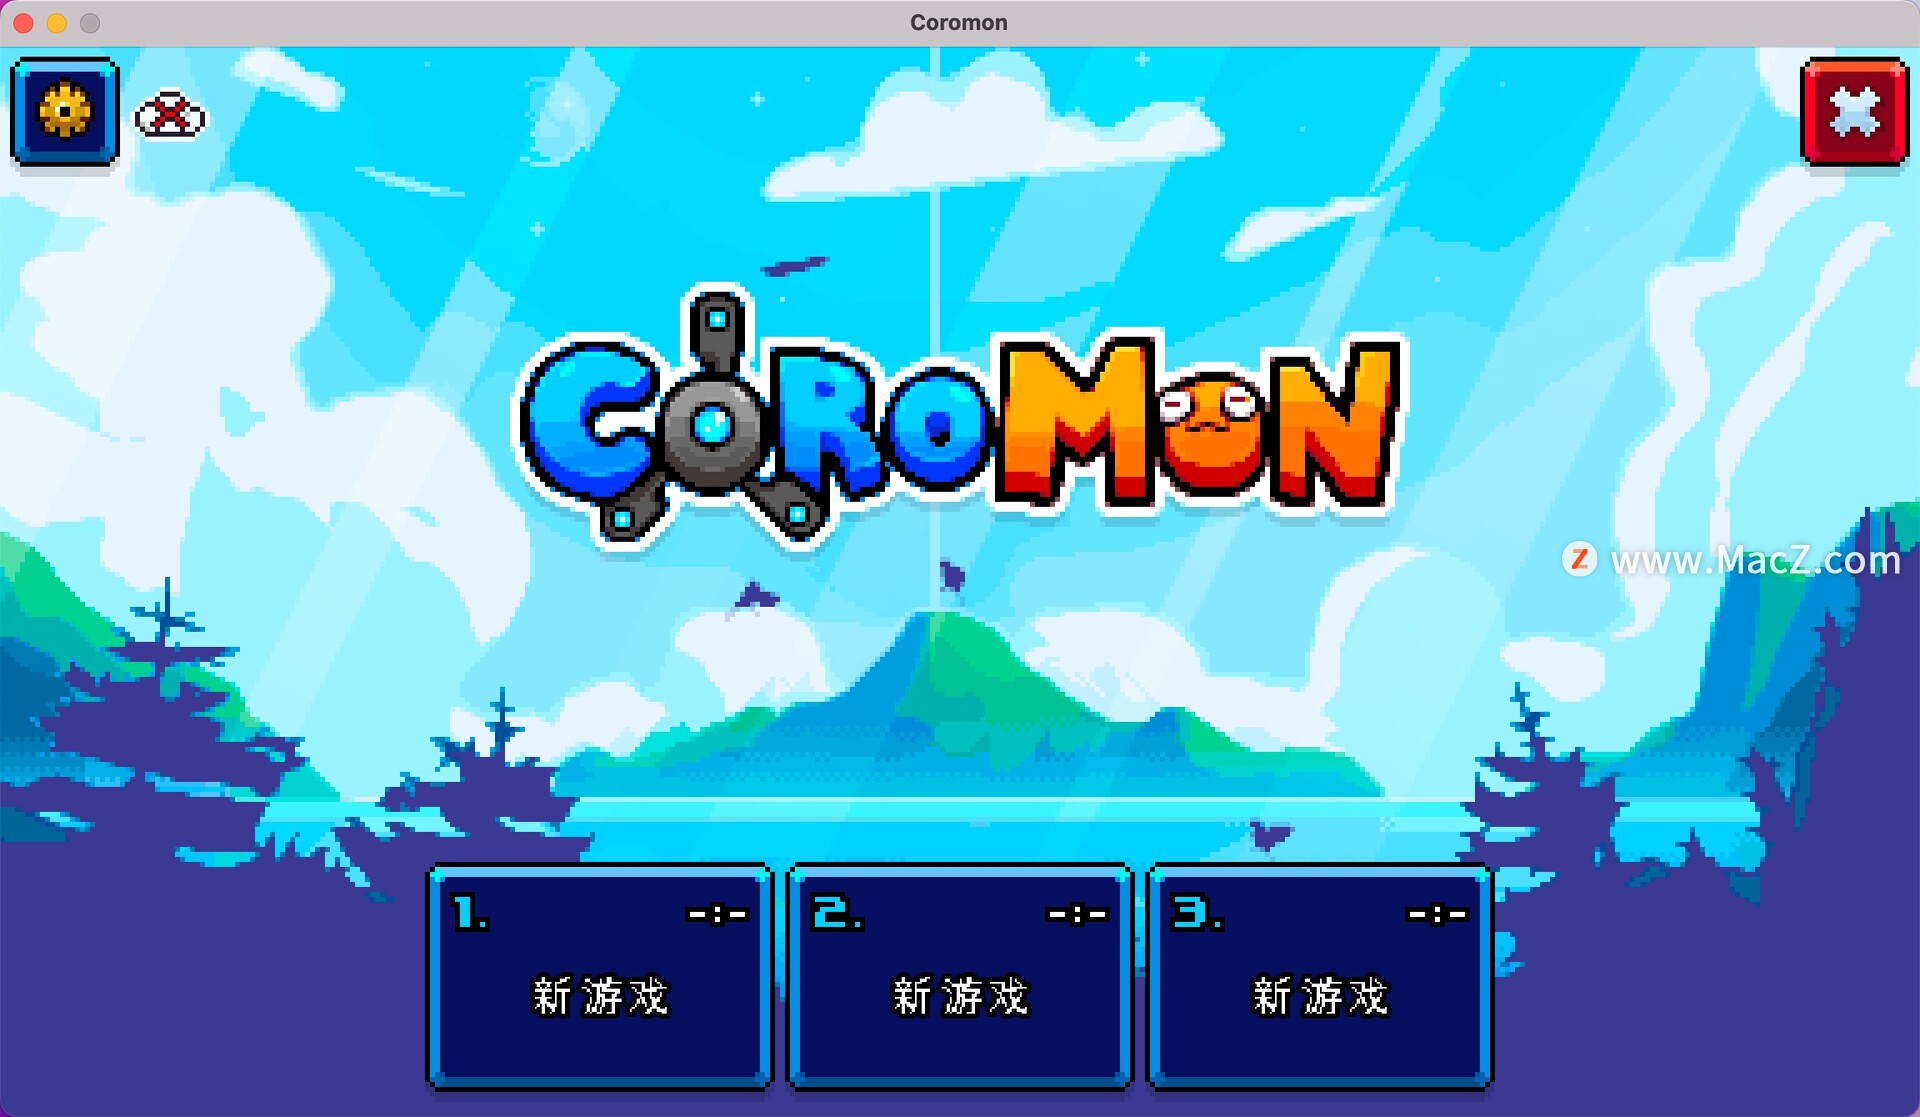 科洛蒙 Coromon for Mac(像素风回合制角色扮演游戏)